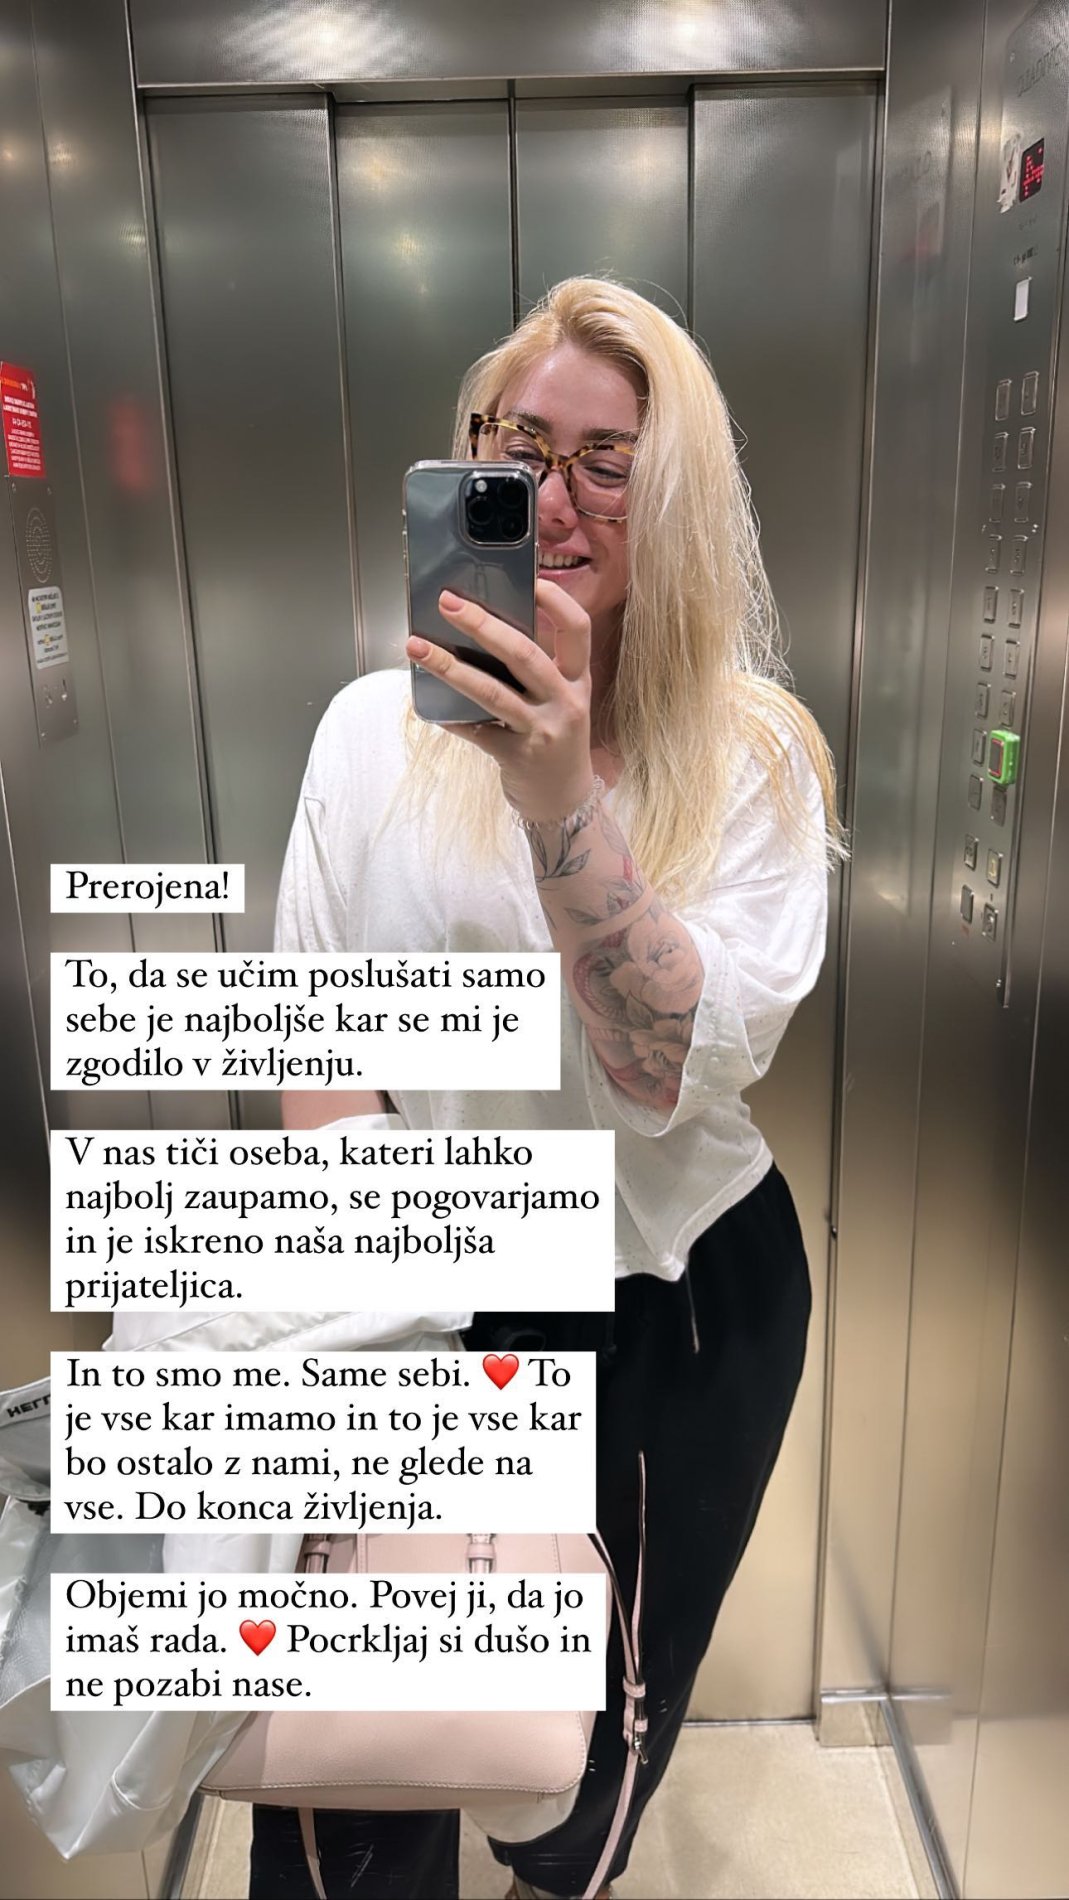 Indira Ekić je prerojena. Vir: Instagram